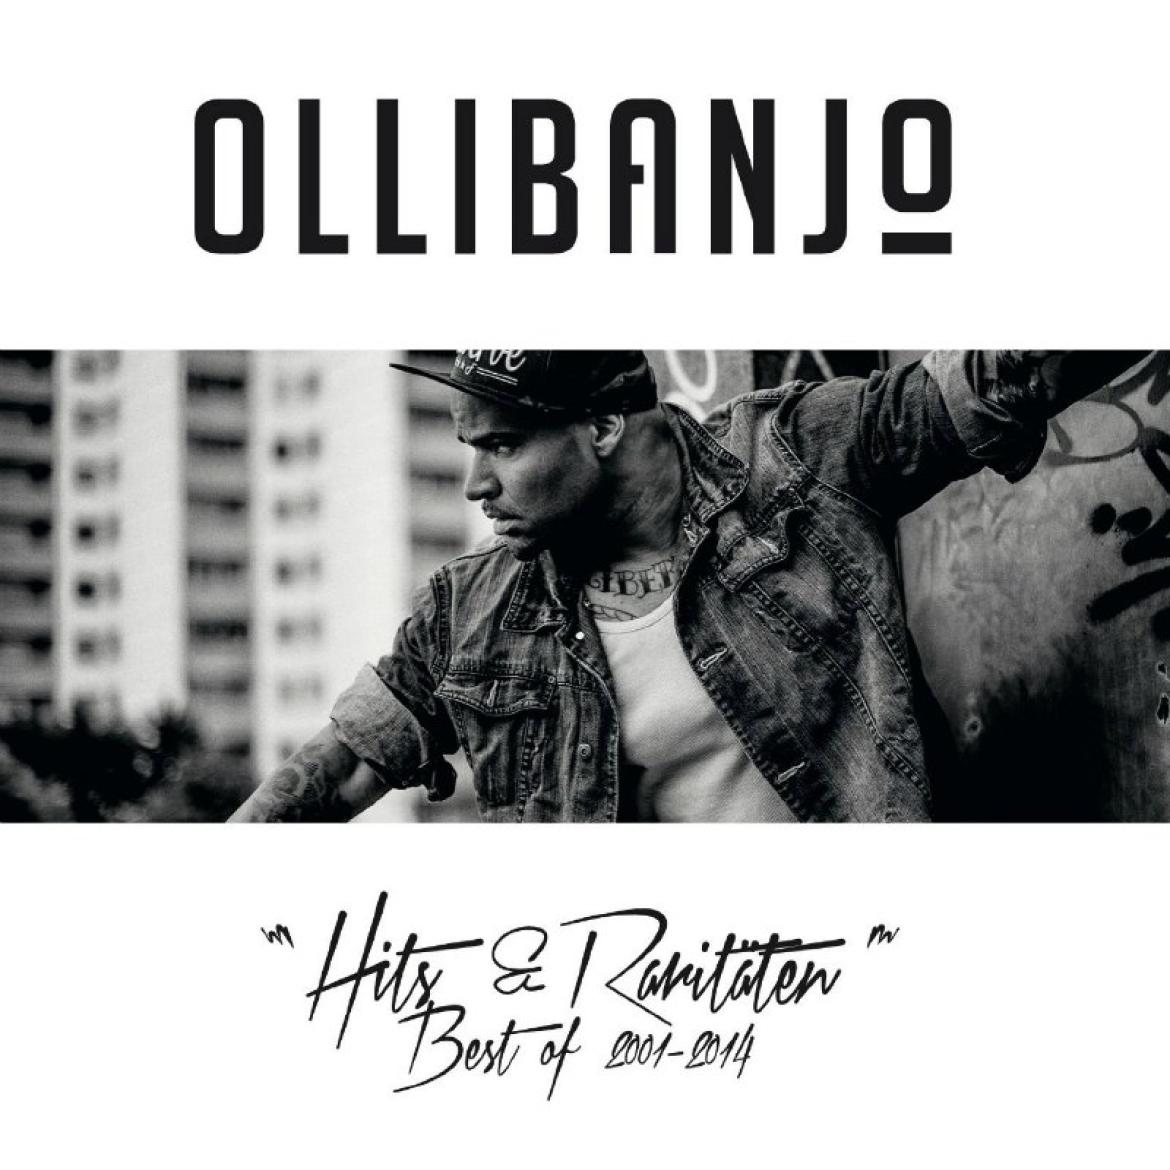 olli_banjo_cover_best_of_800_2014.jpg